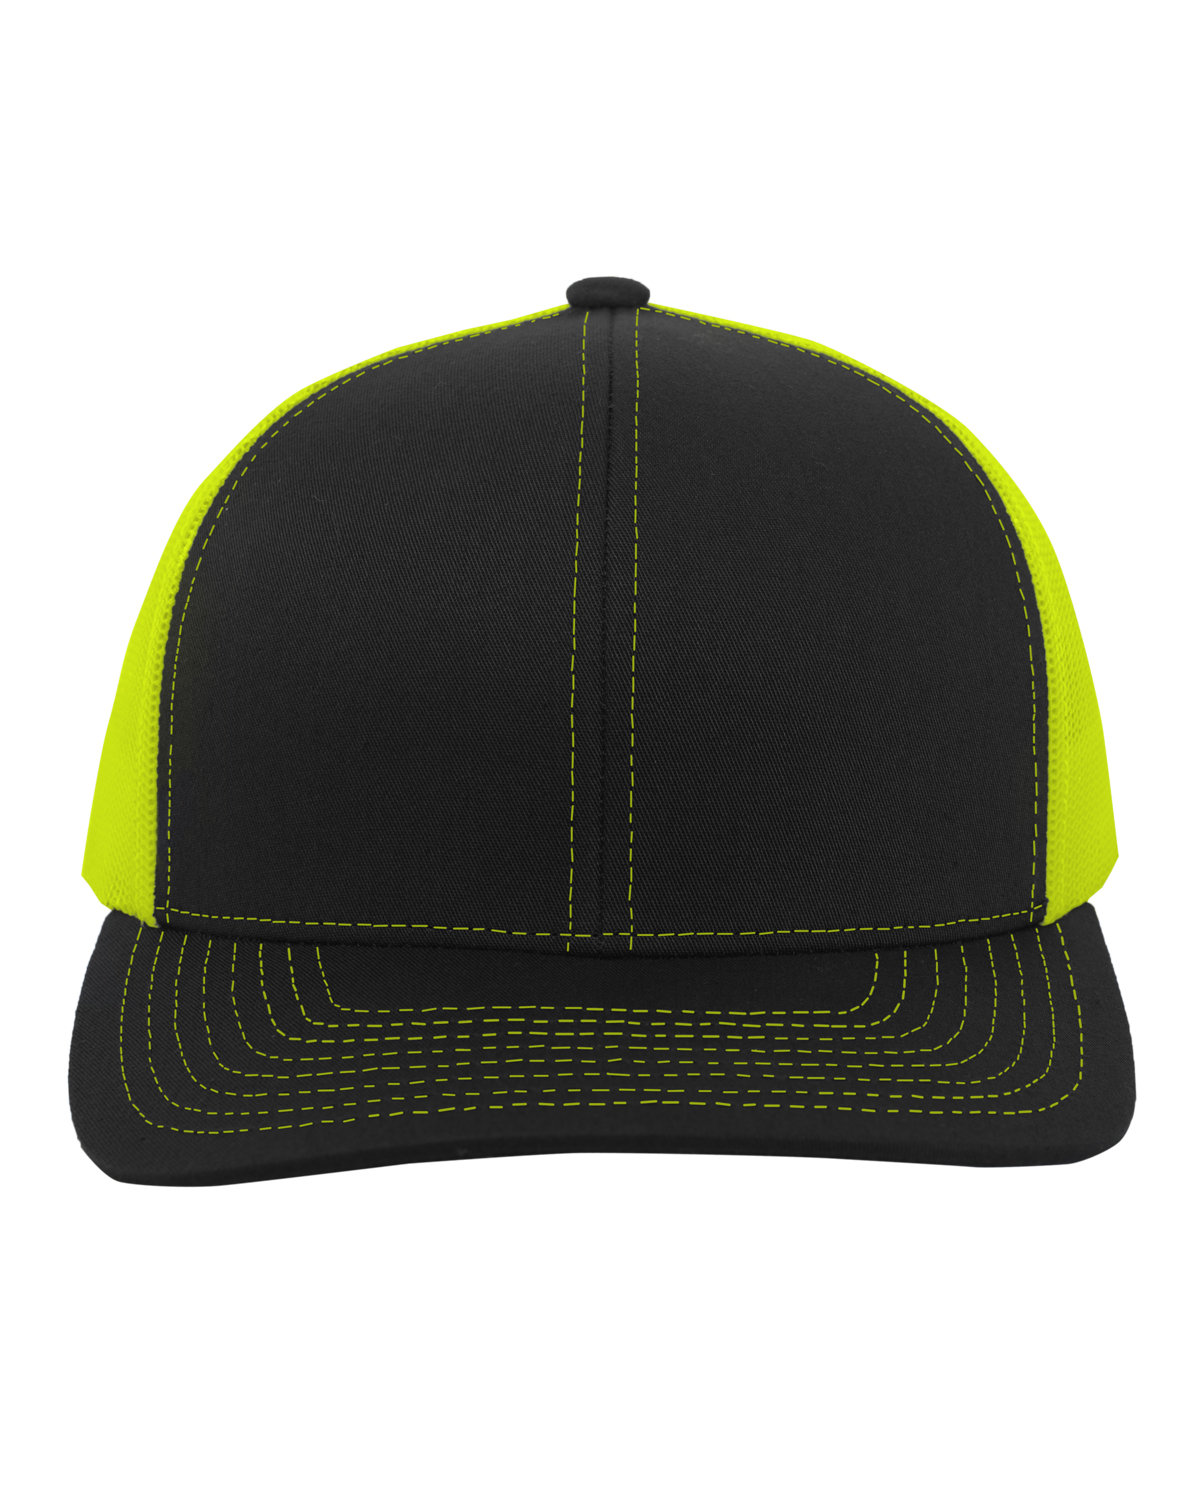 Pacific Headwear Trucker Snapback Hat BLACK/ NEON YLLW 